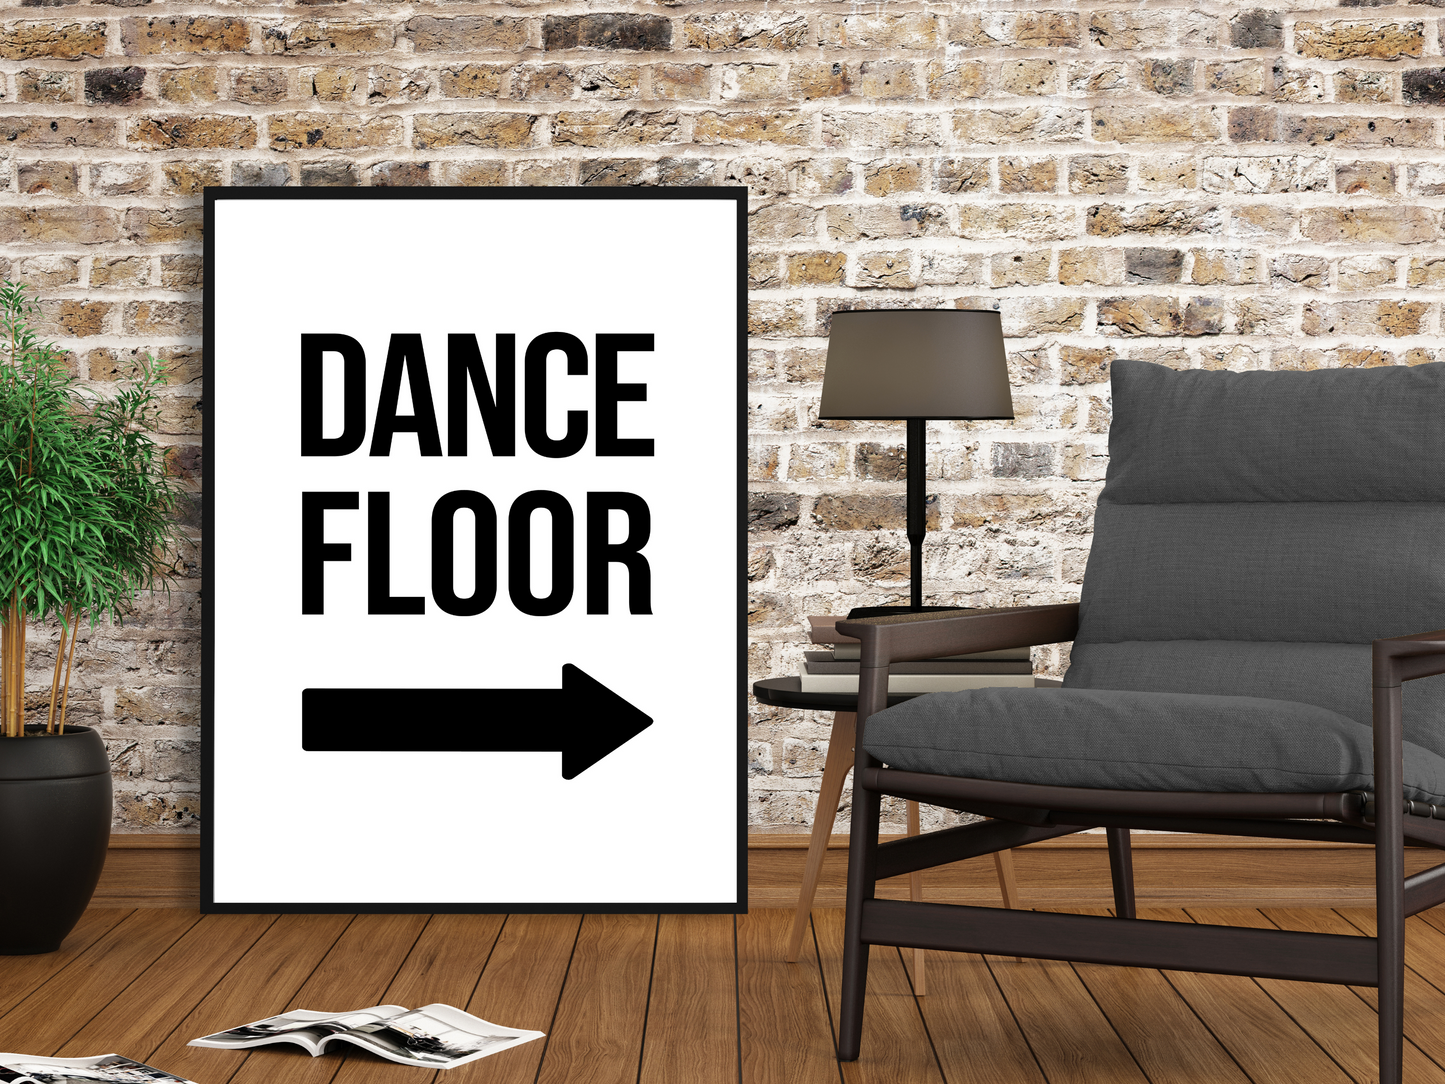 Dance Floor (Right Arrow)